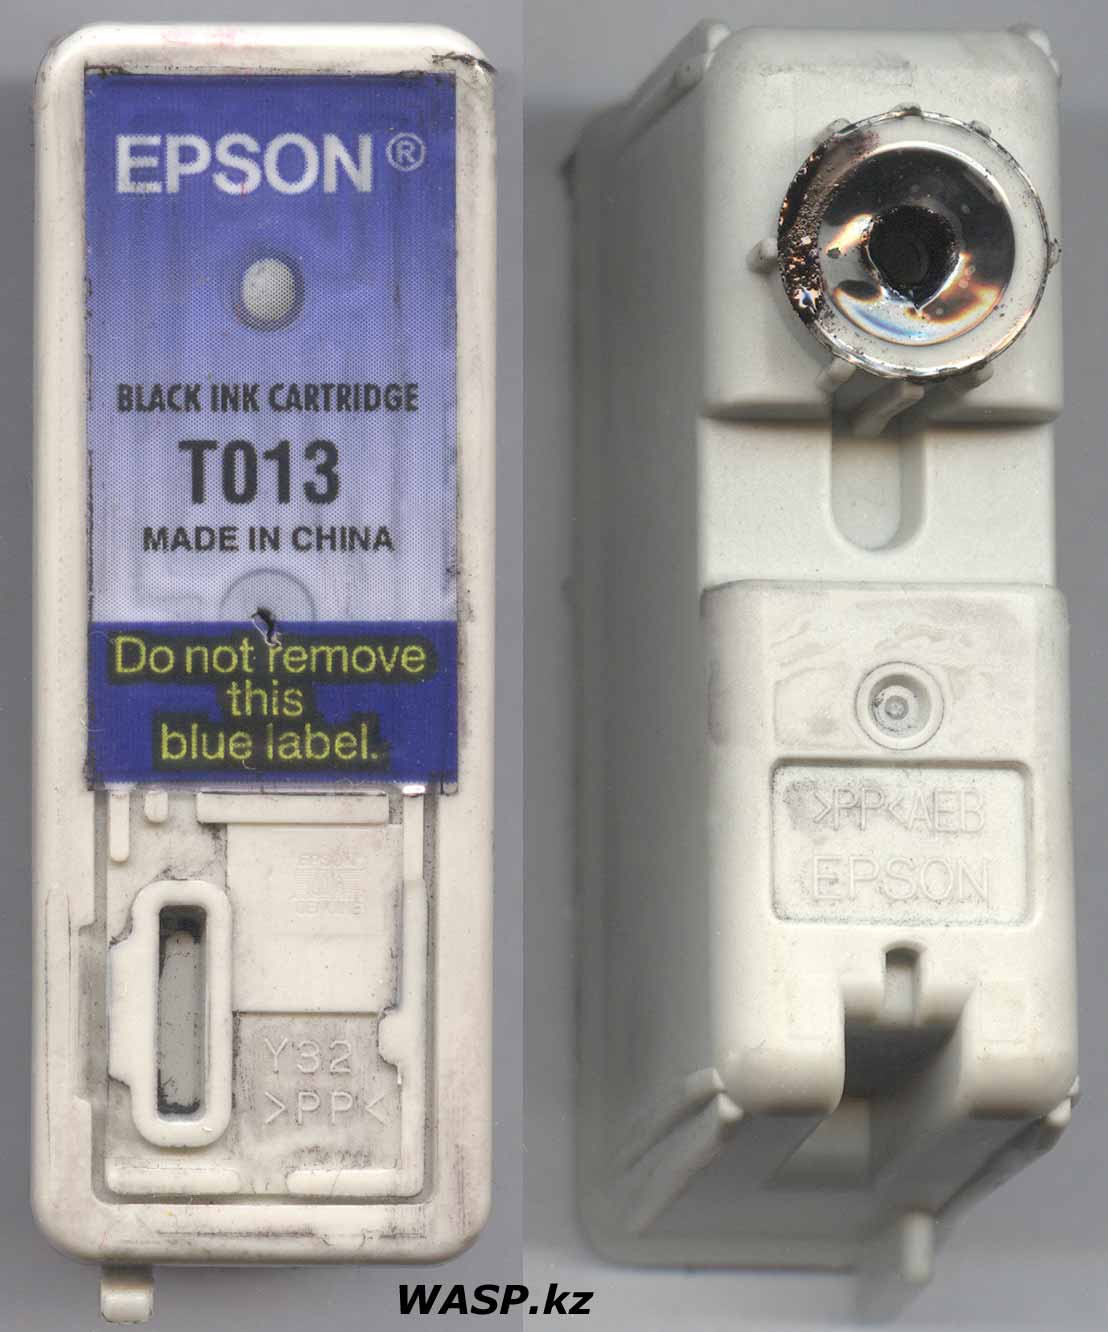 Epson T013 чернильница для F093020 печатающей головки принтера